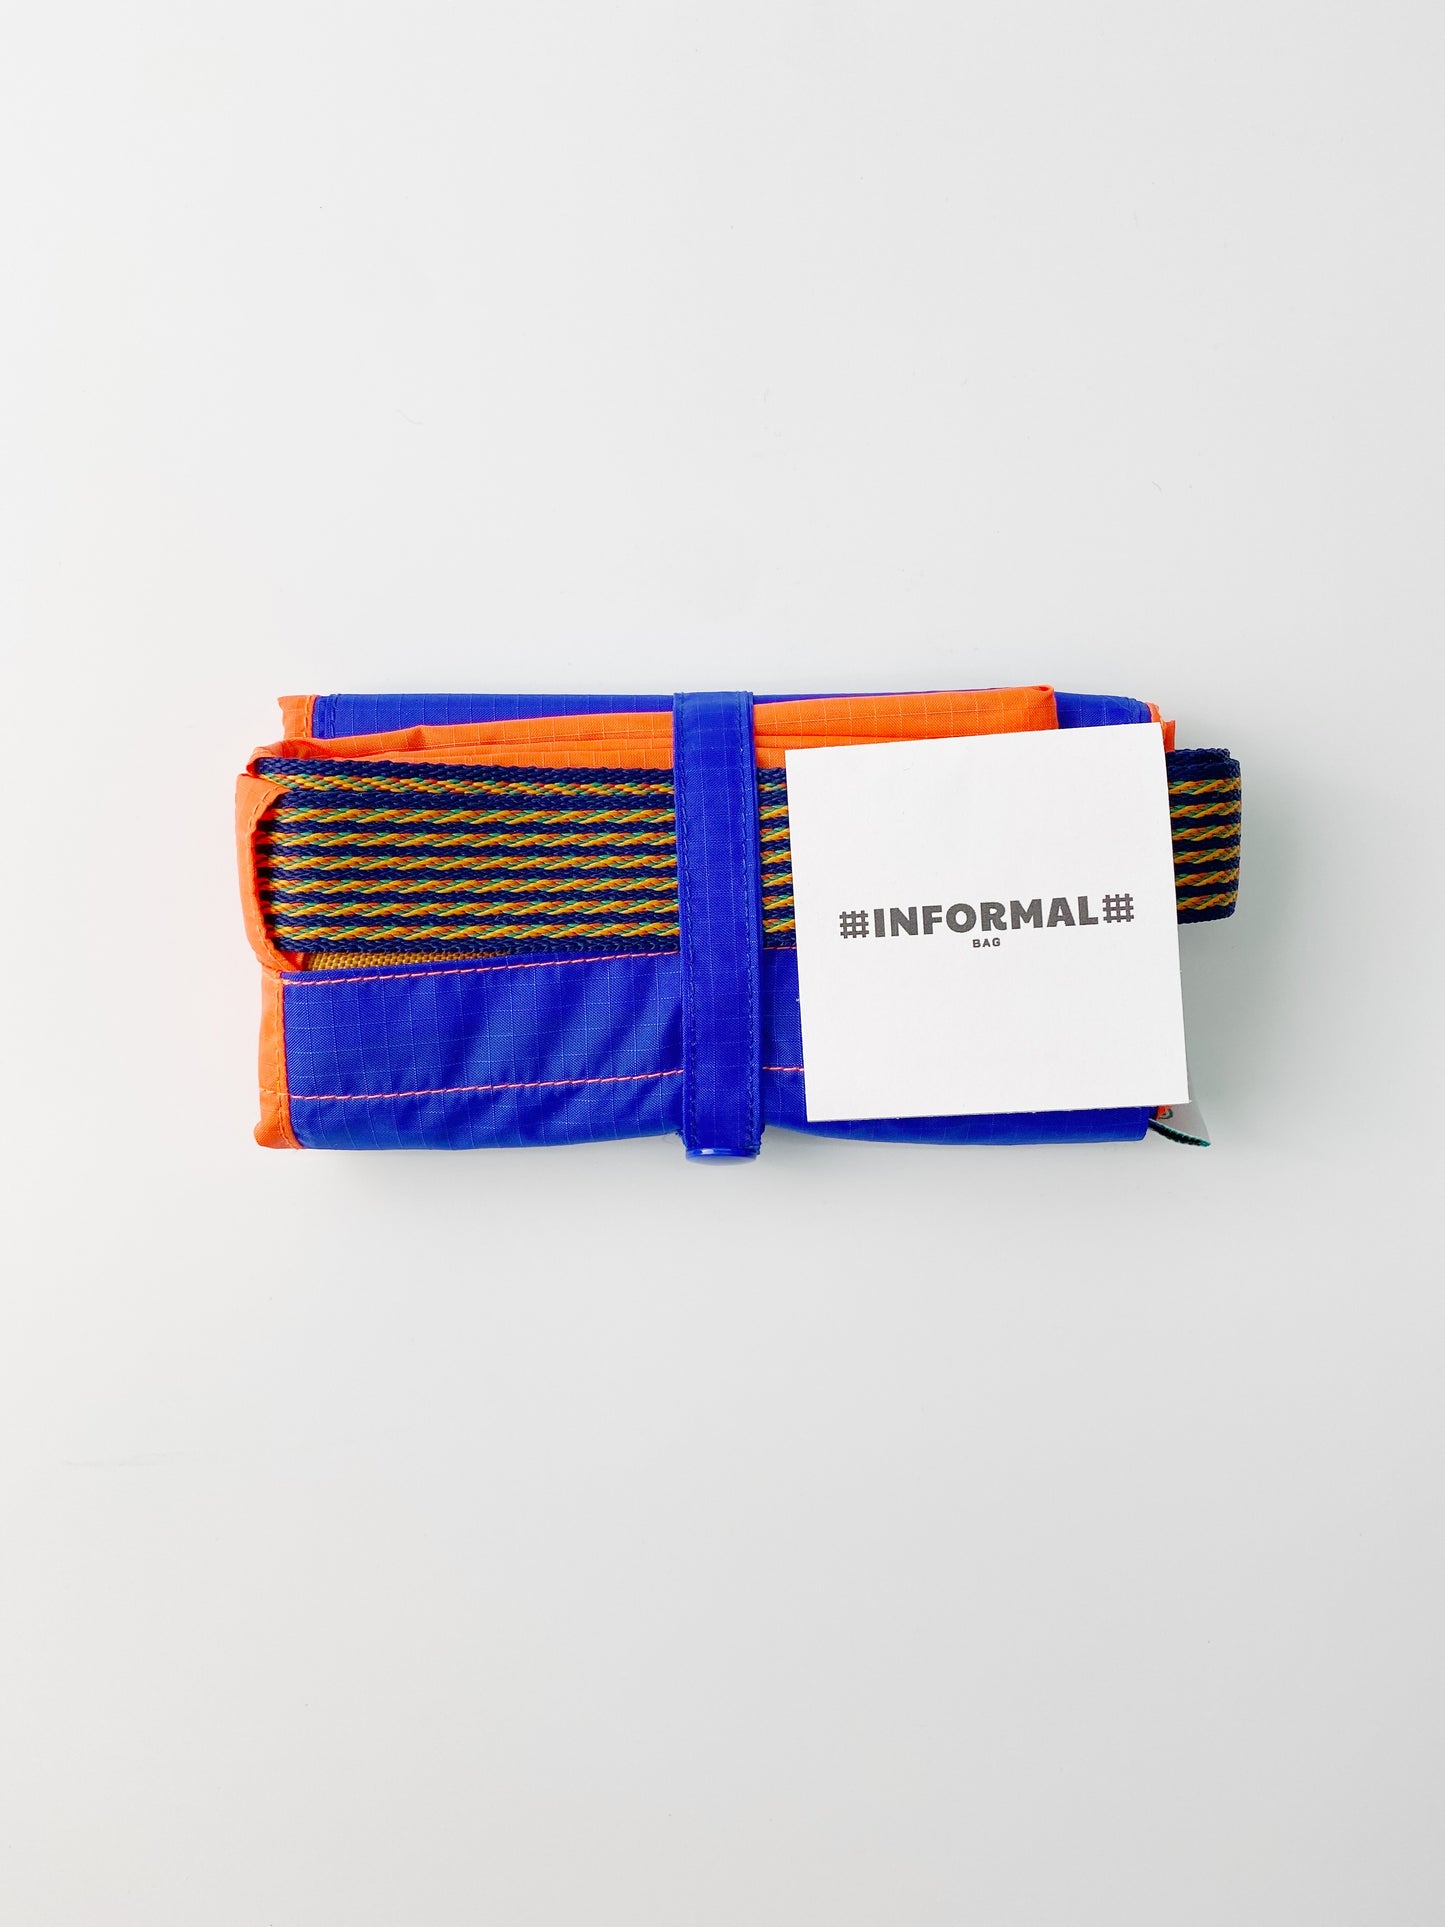 Informal Bag Multicolors Checkout Bag (Easy Blue & Orange)